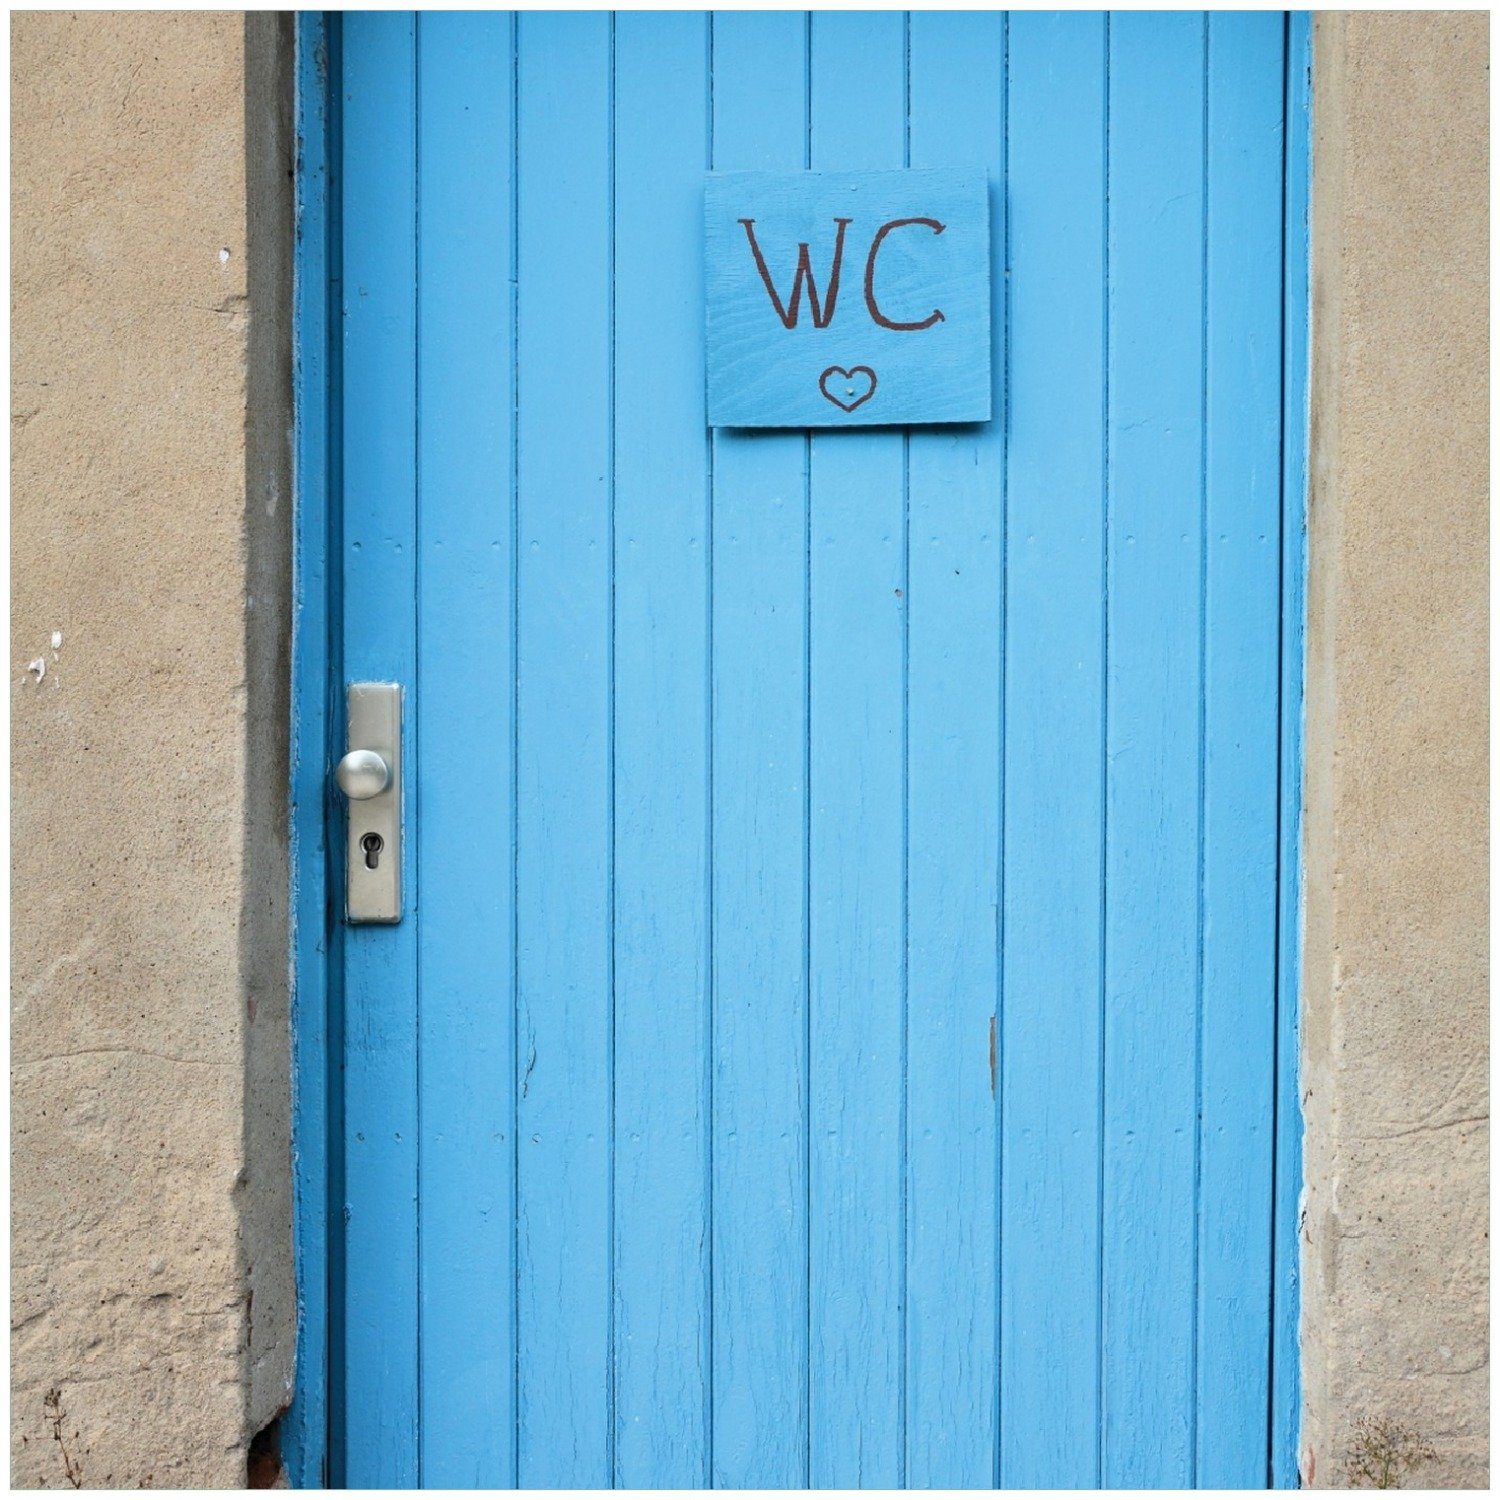 Wallario Memoboard Blaue Fabrik verlassenen in Magdeburg einer Toilette in einer Tür